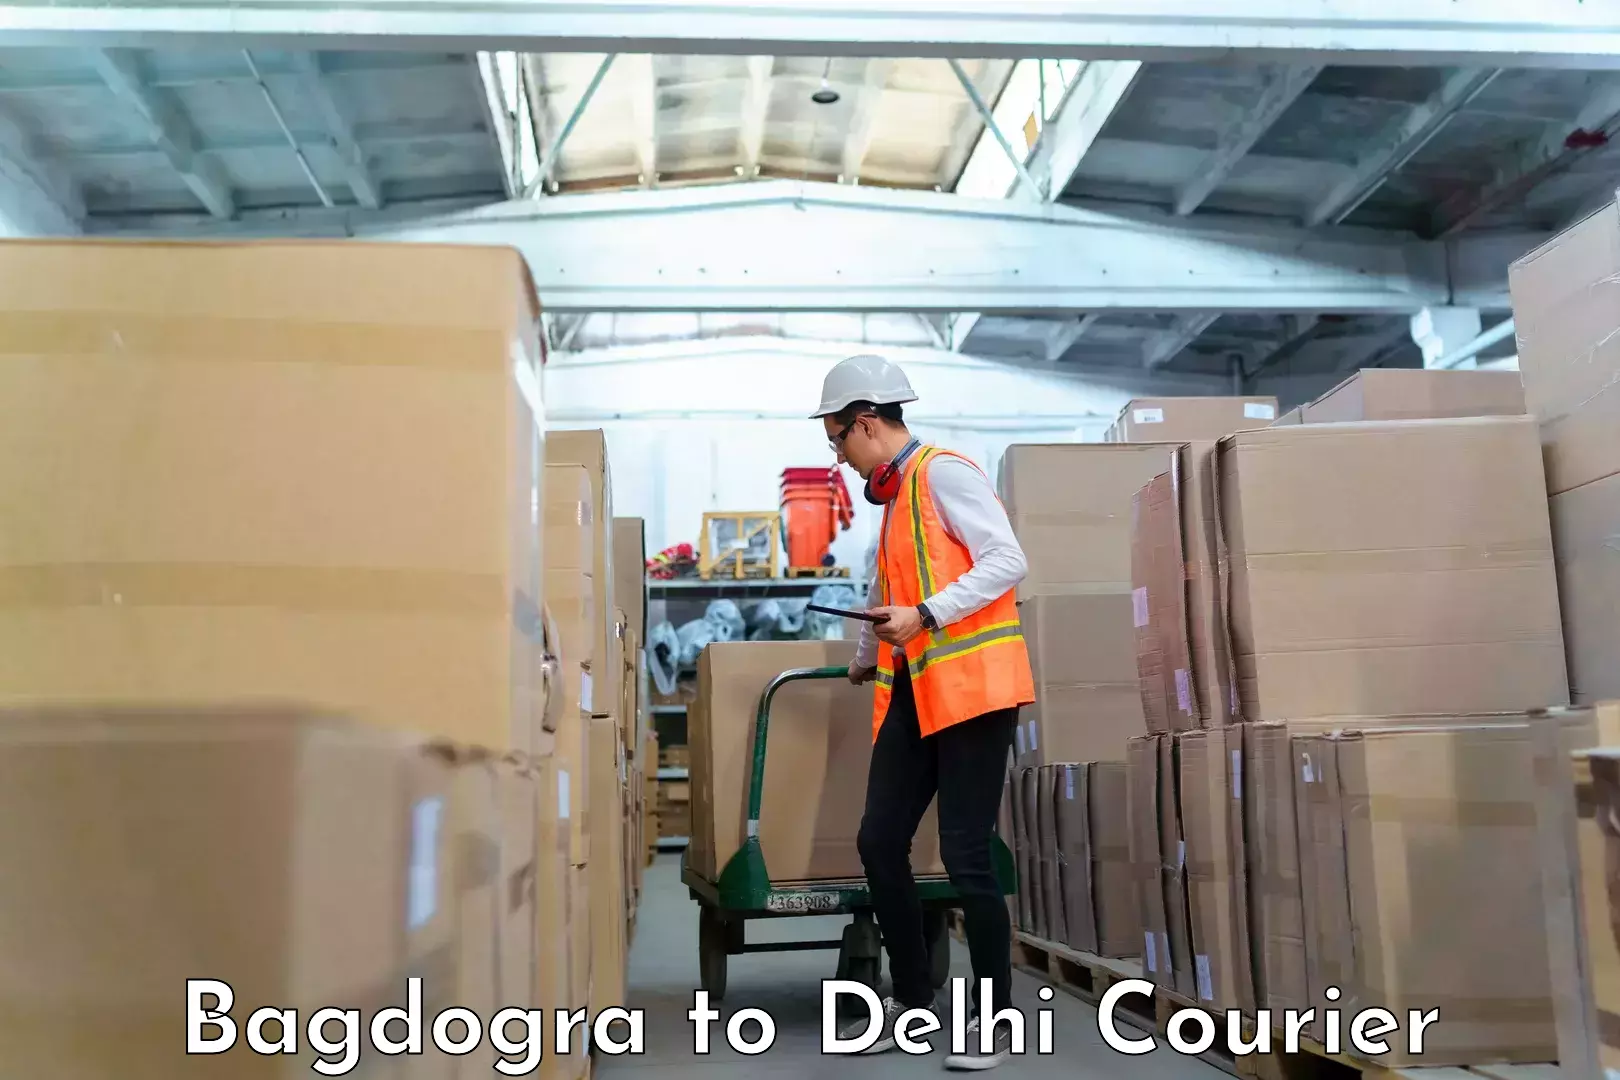 Baggage transport innovation Bagdogra to Delhi